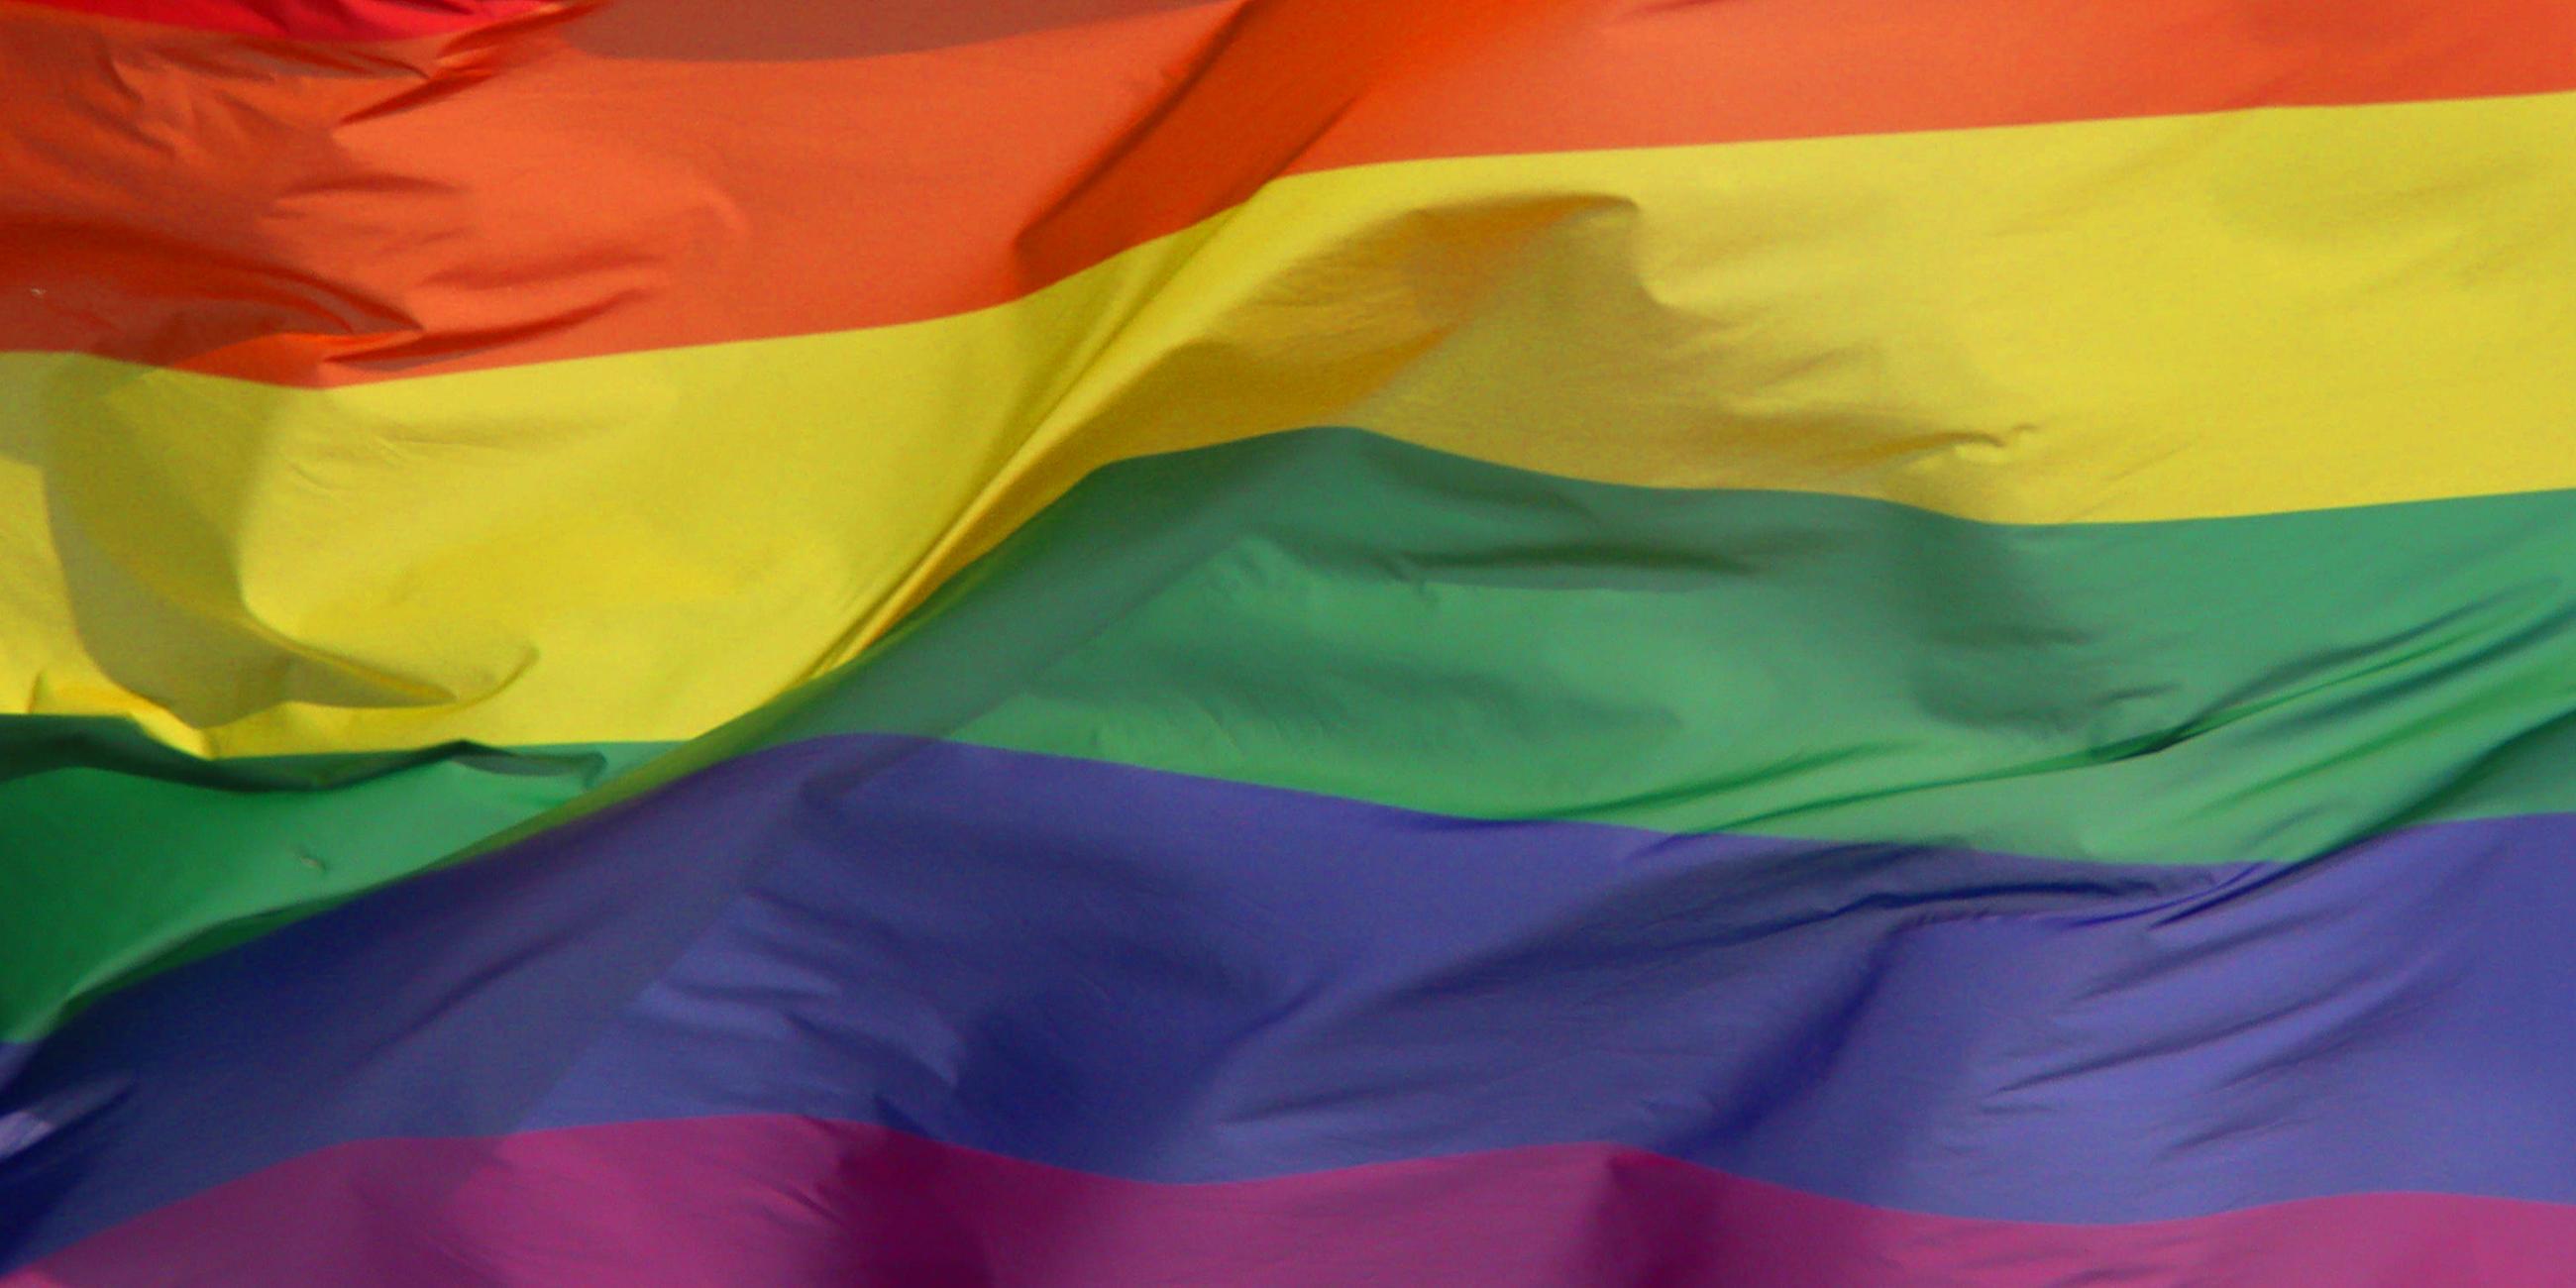 Typical: Regenbogenflagge